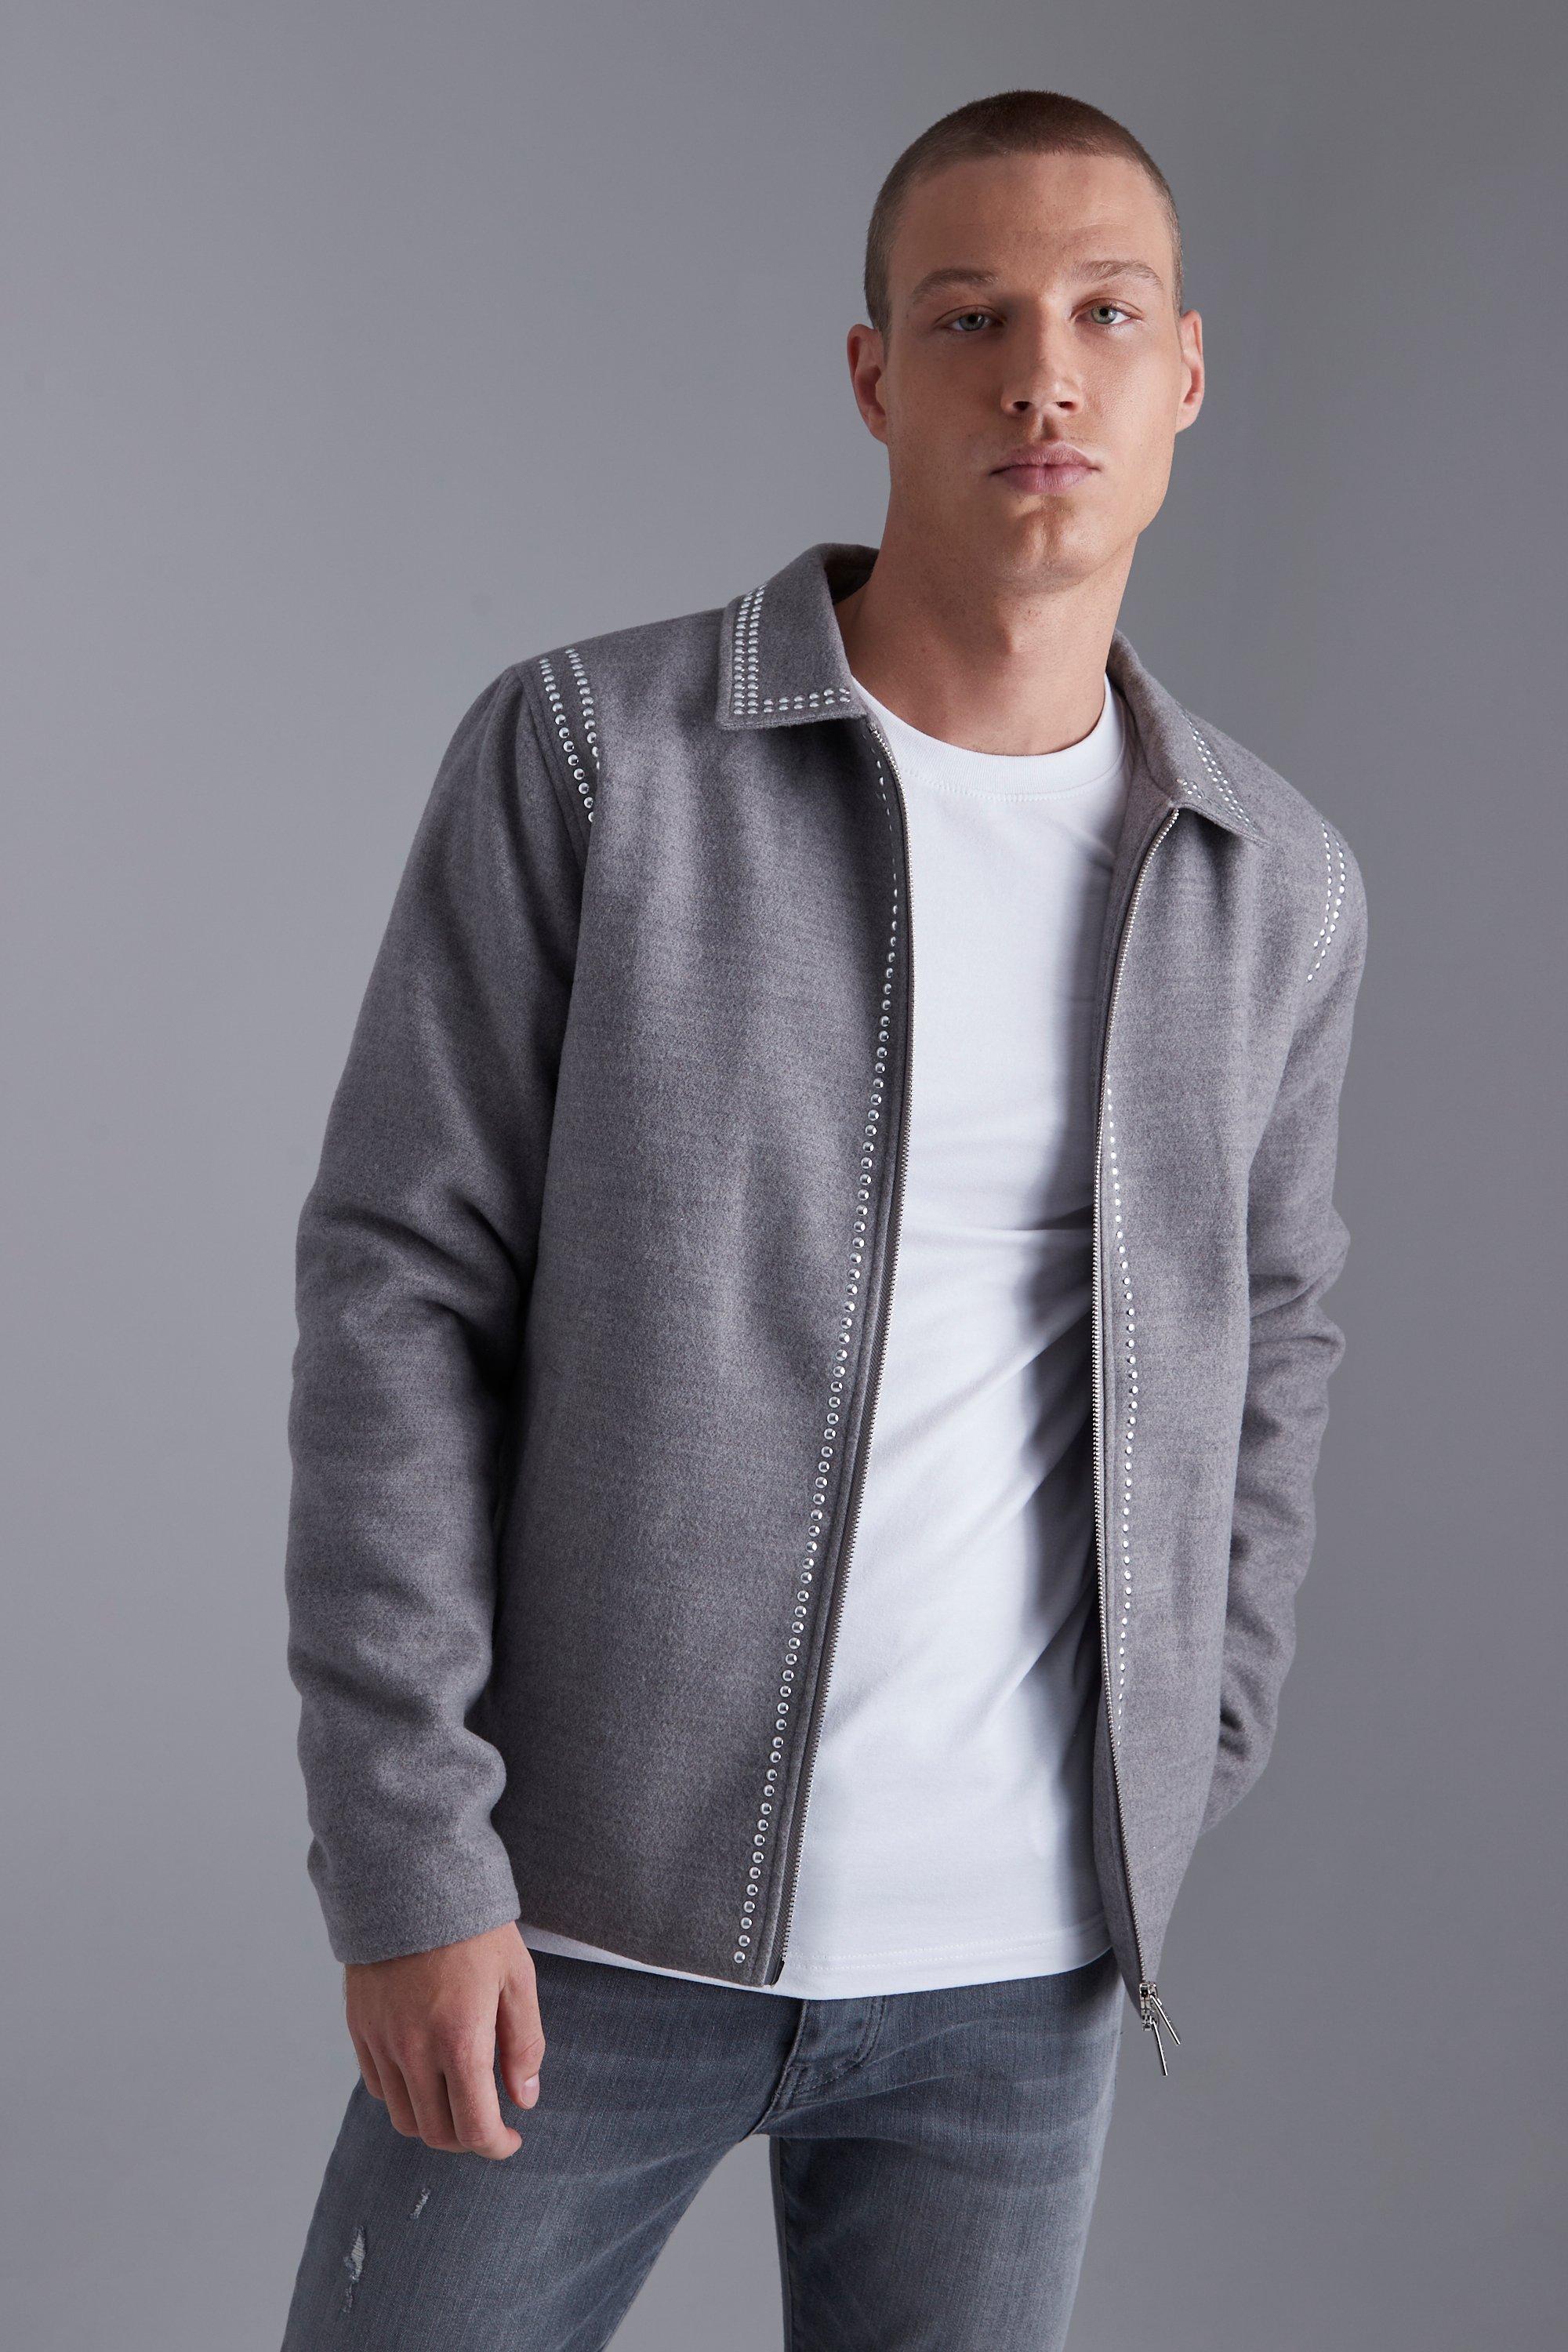 veste harrington strassée effet laine homme - gris - xs, gris